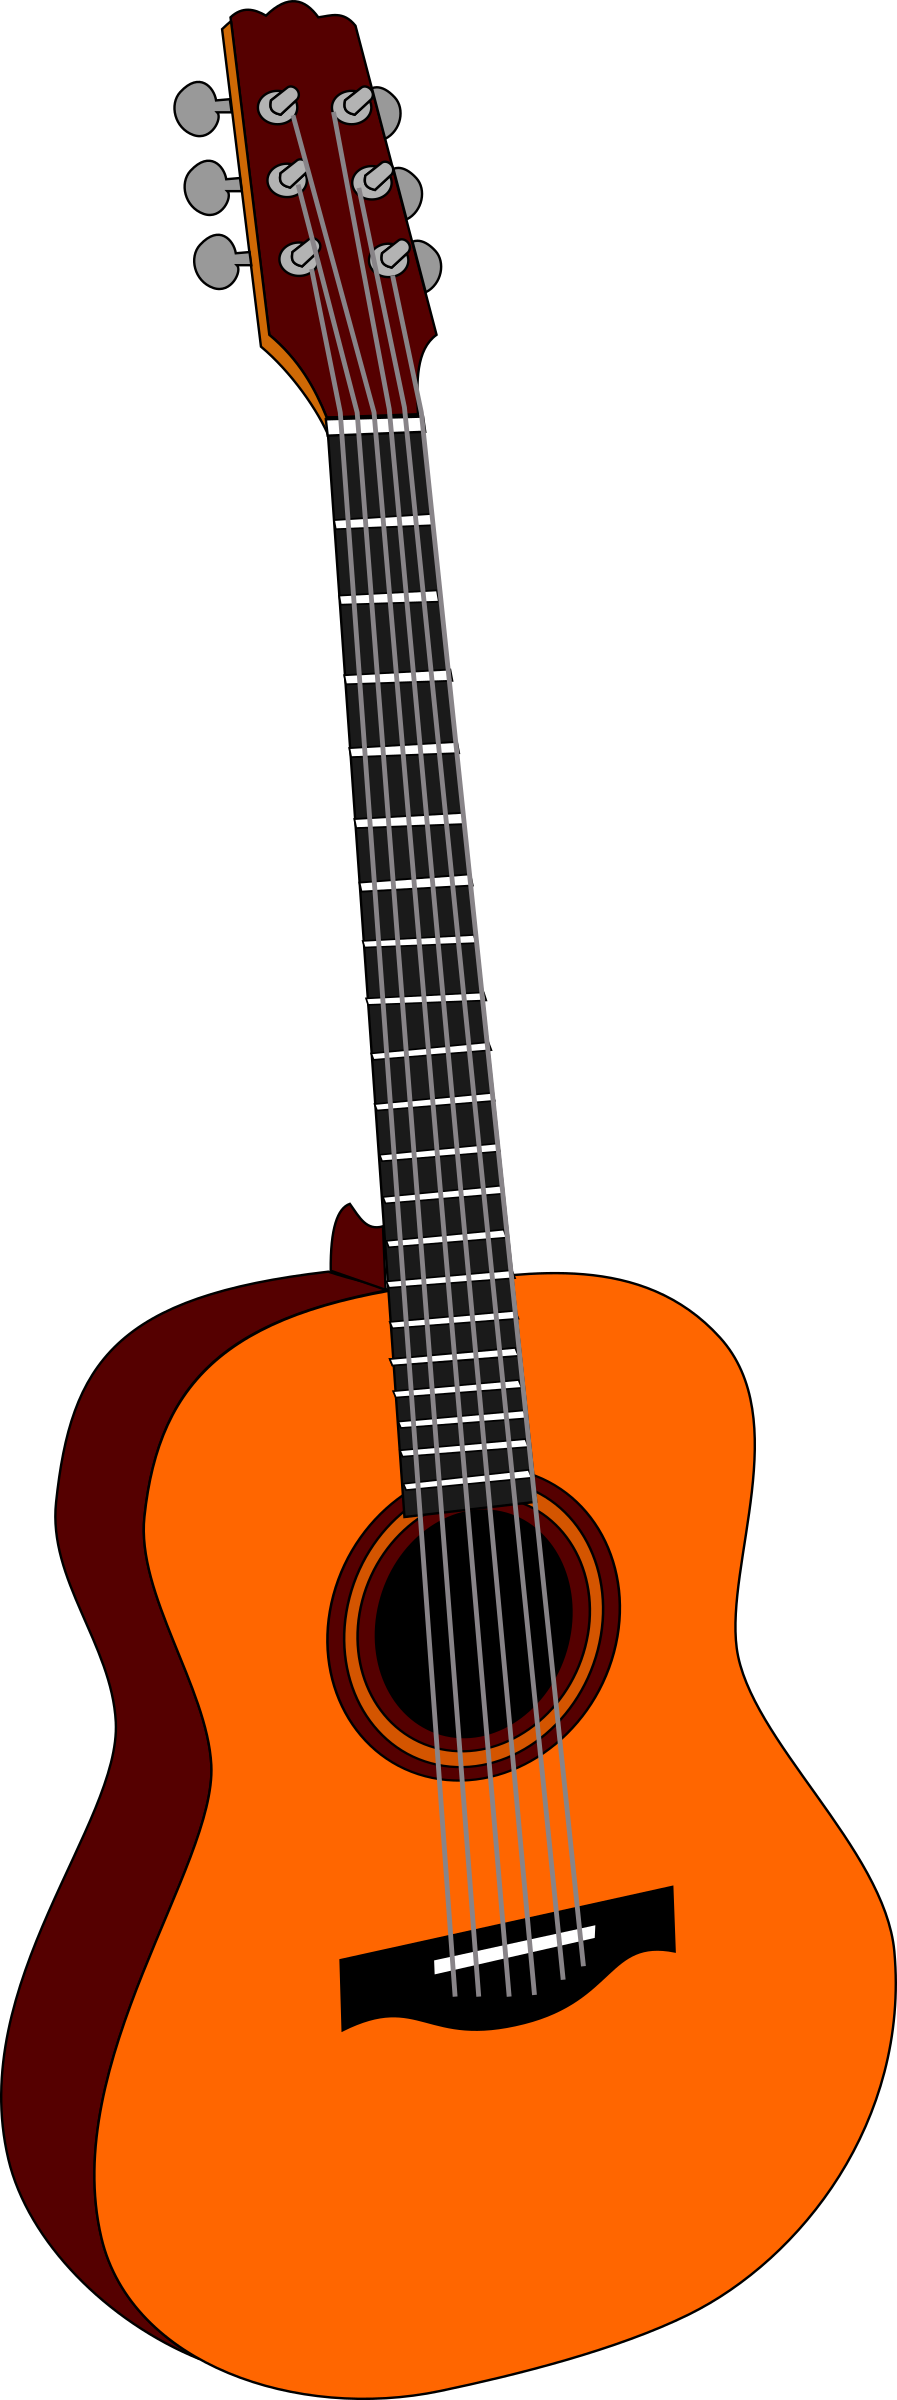 Clipart guitar orange guitar. Big image png